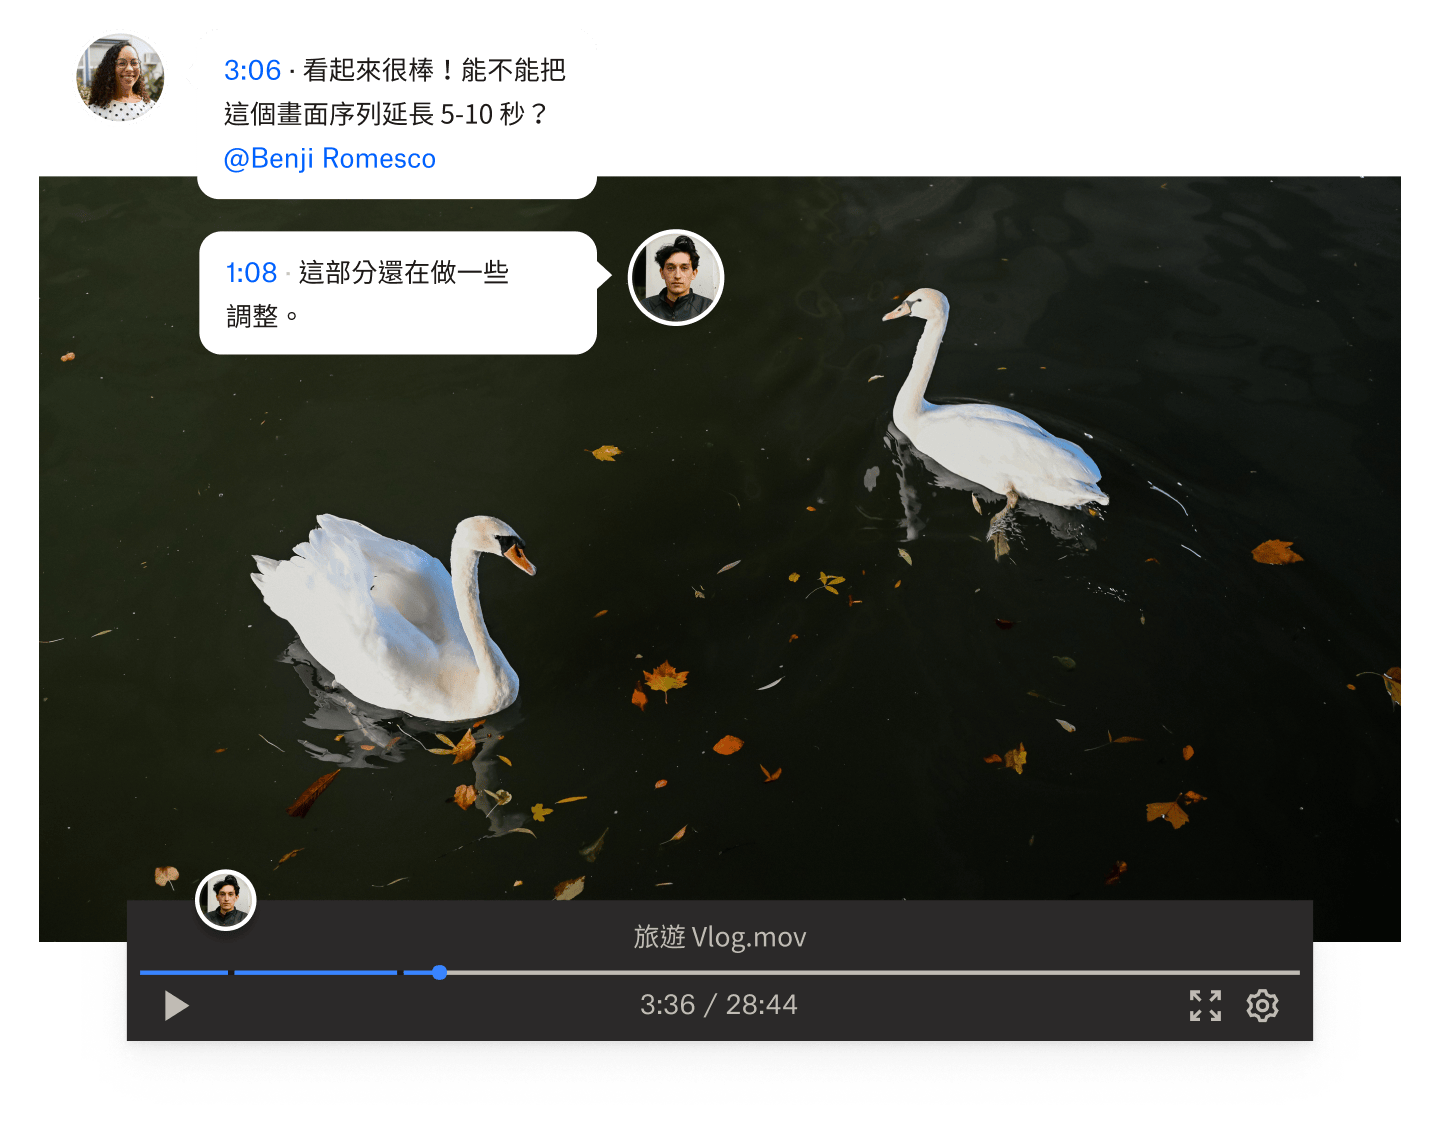 兩隻天鵝在水中游泳的影片截圖，上面顯示附時間戳記的留言